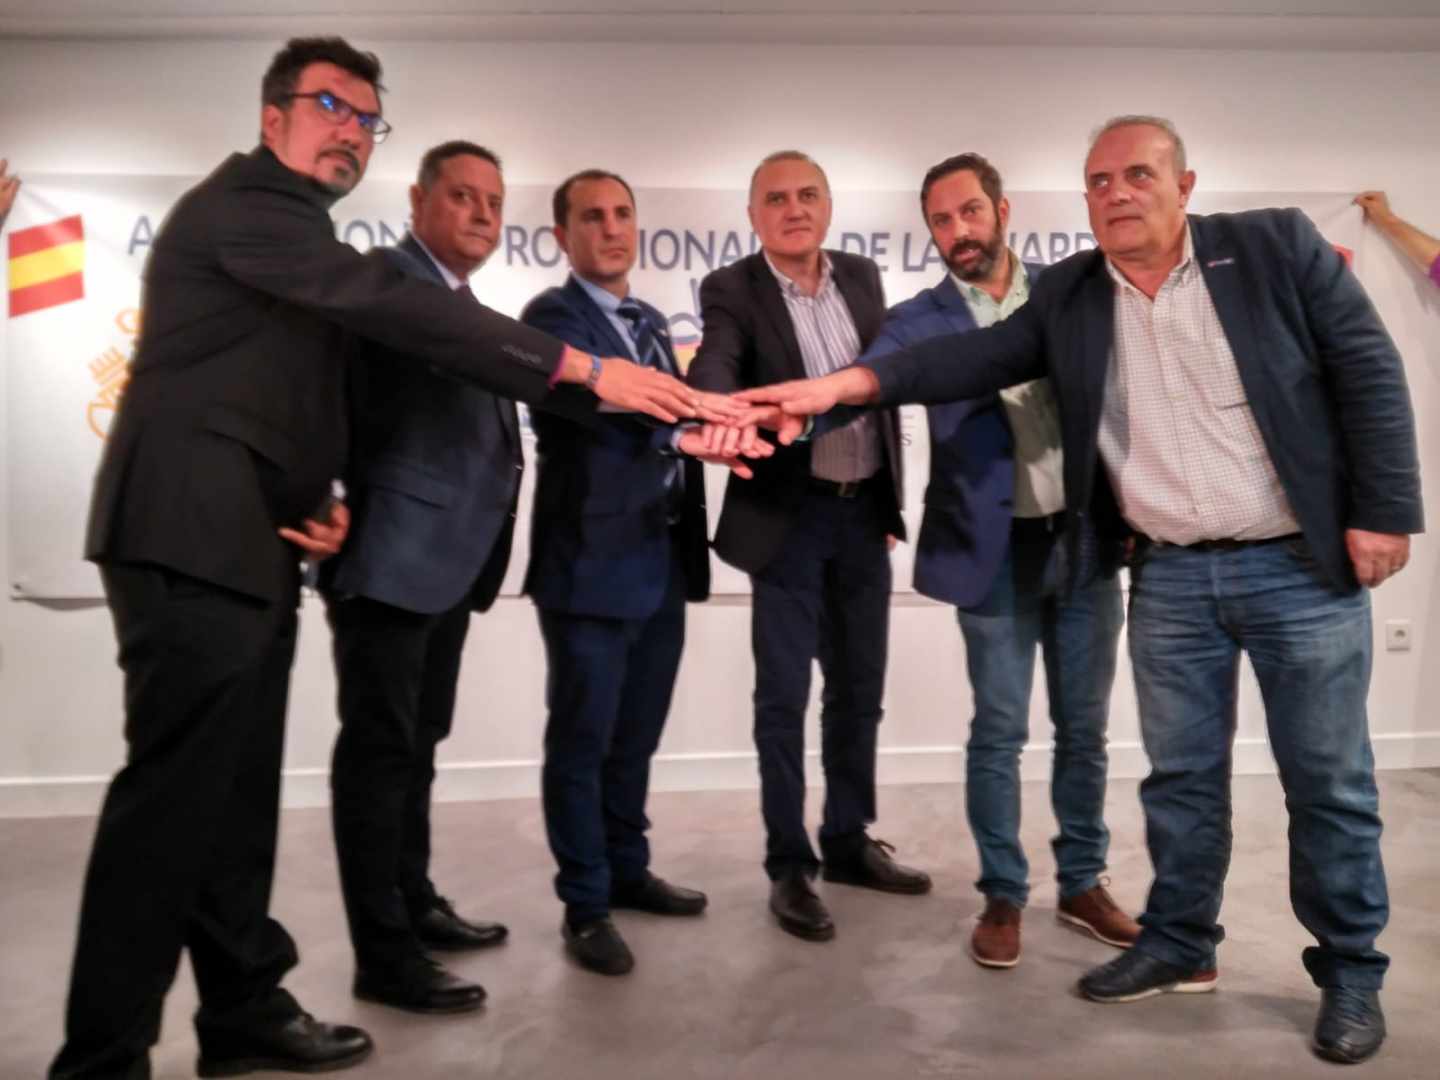 Fernando García (Cabos), Ángel Ramírez (ASESGC), Javier Montes (UO), Alberto Moya (AUGC), Pablo González (AEGC) y Ramón Rodríguez Prendes (UniónGC), este martes en Madrid.